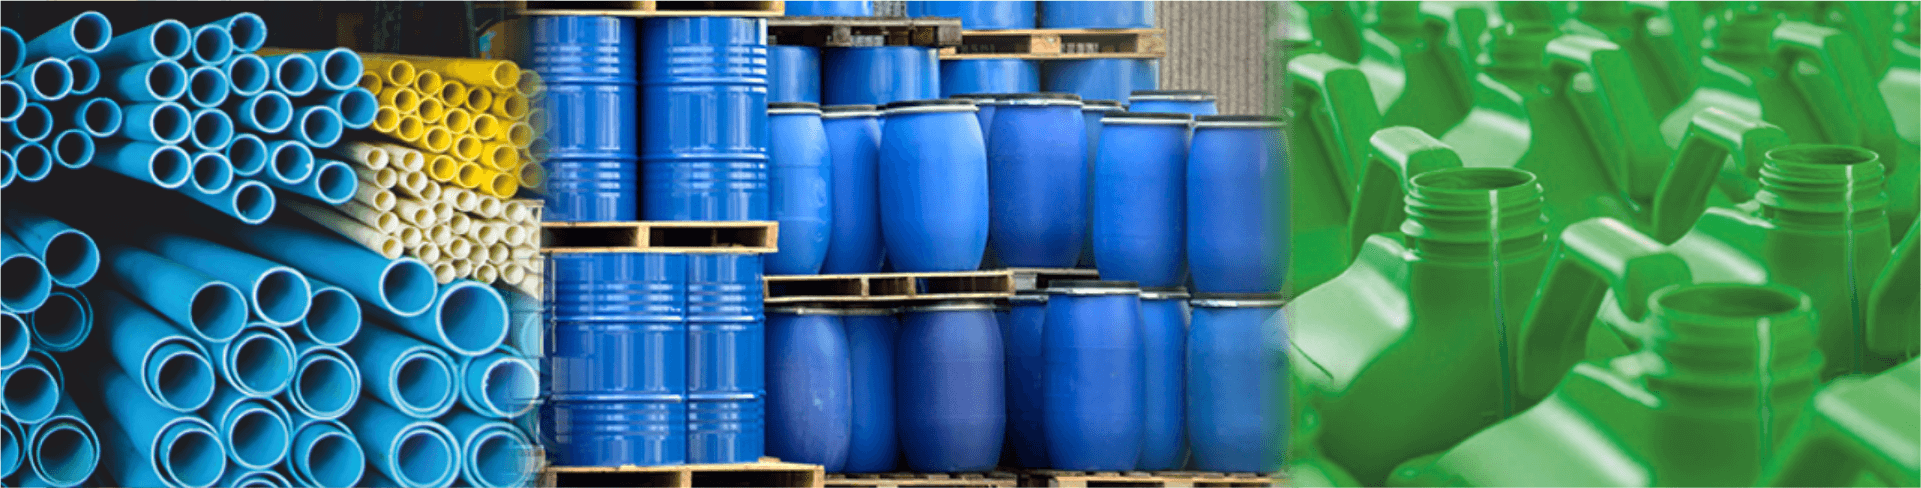 HDPE biggest distributor of OPaL - Prakash chemicals agencies